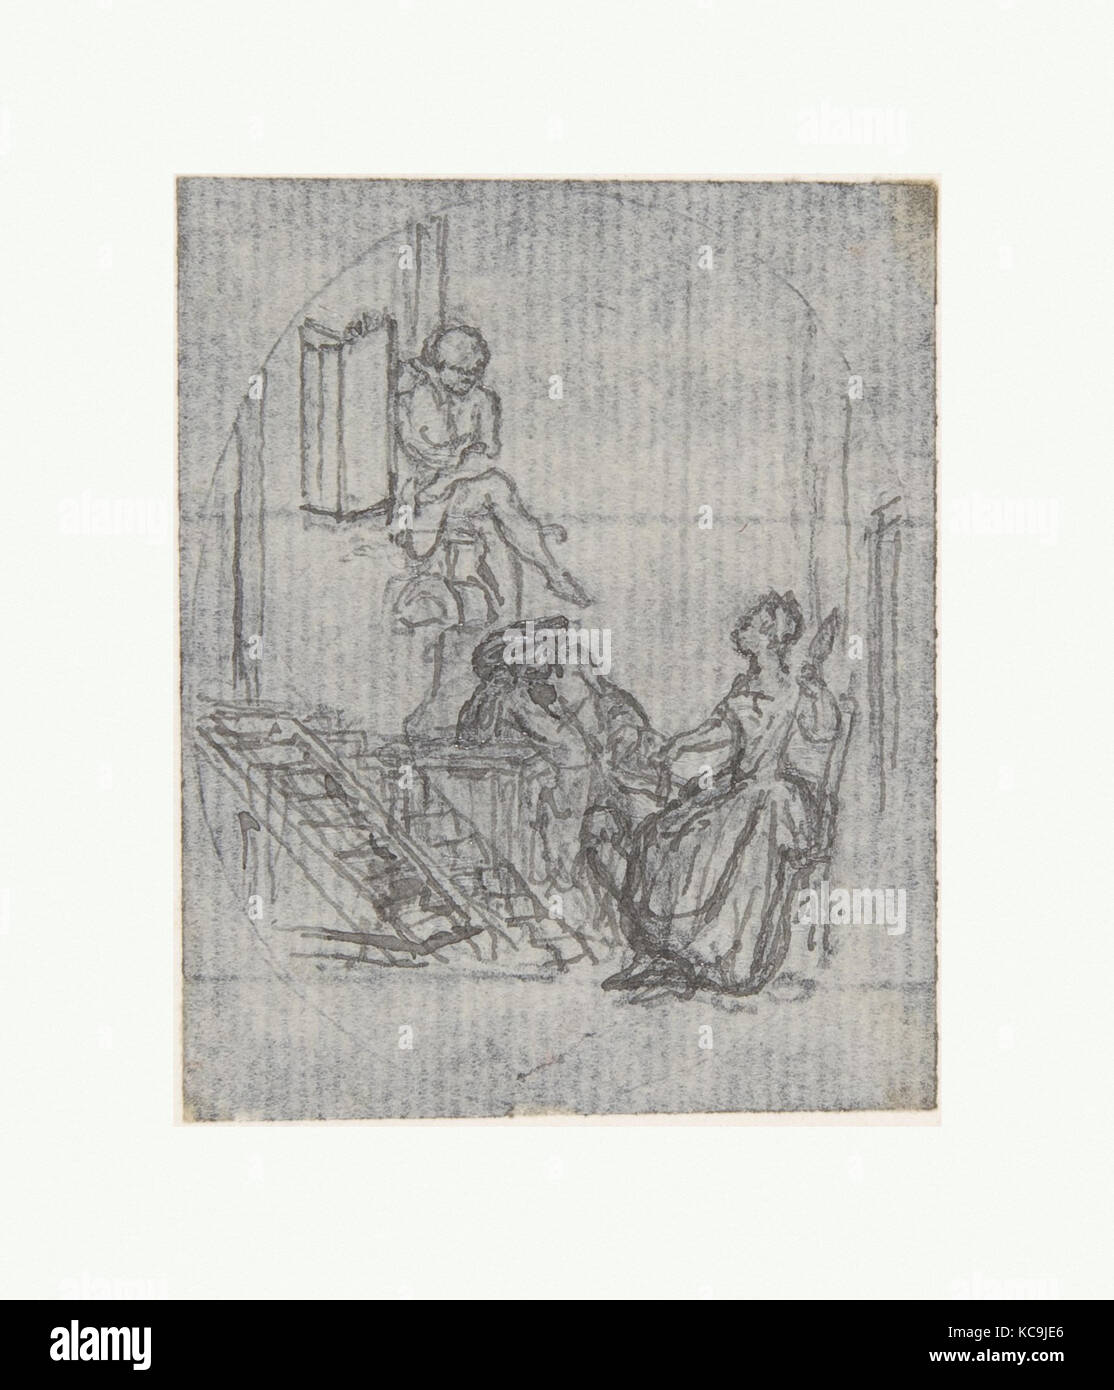 Conception pour une illustration de livre ?, François Hubert Gravelot, 18e siècle Banque D'Images